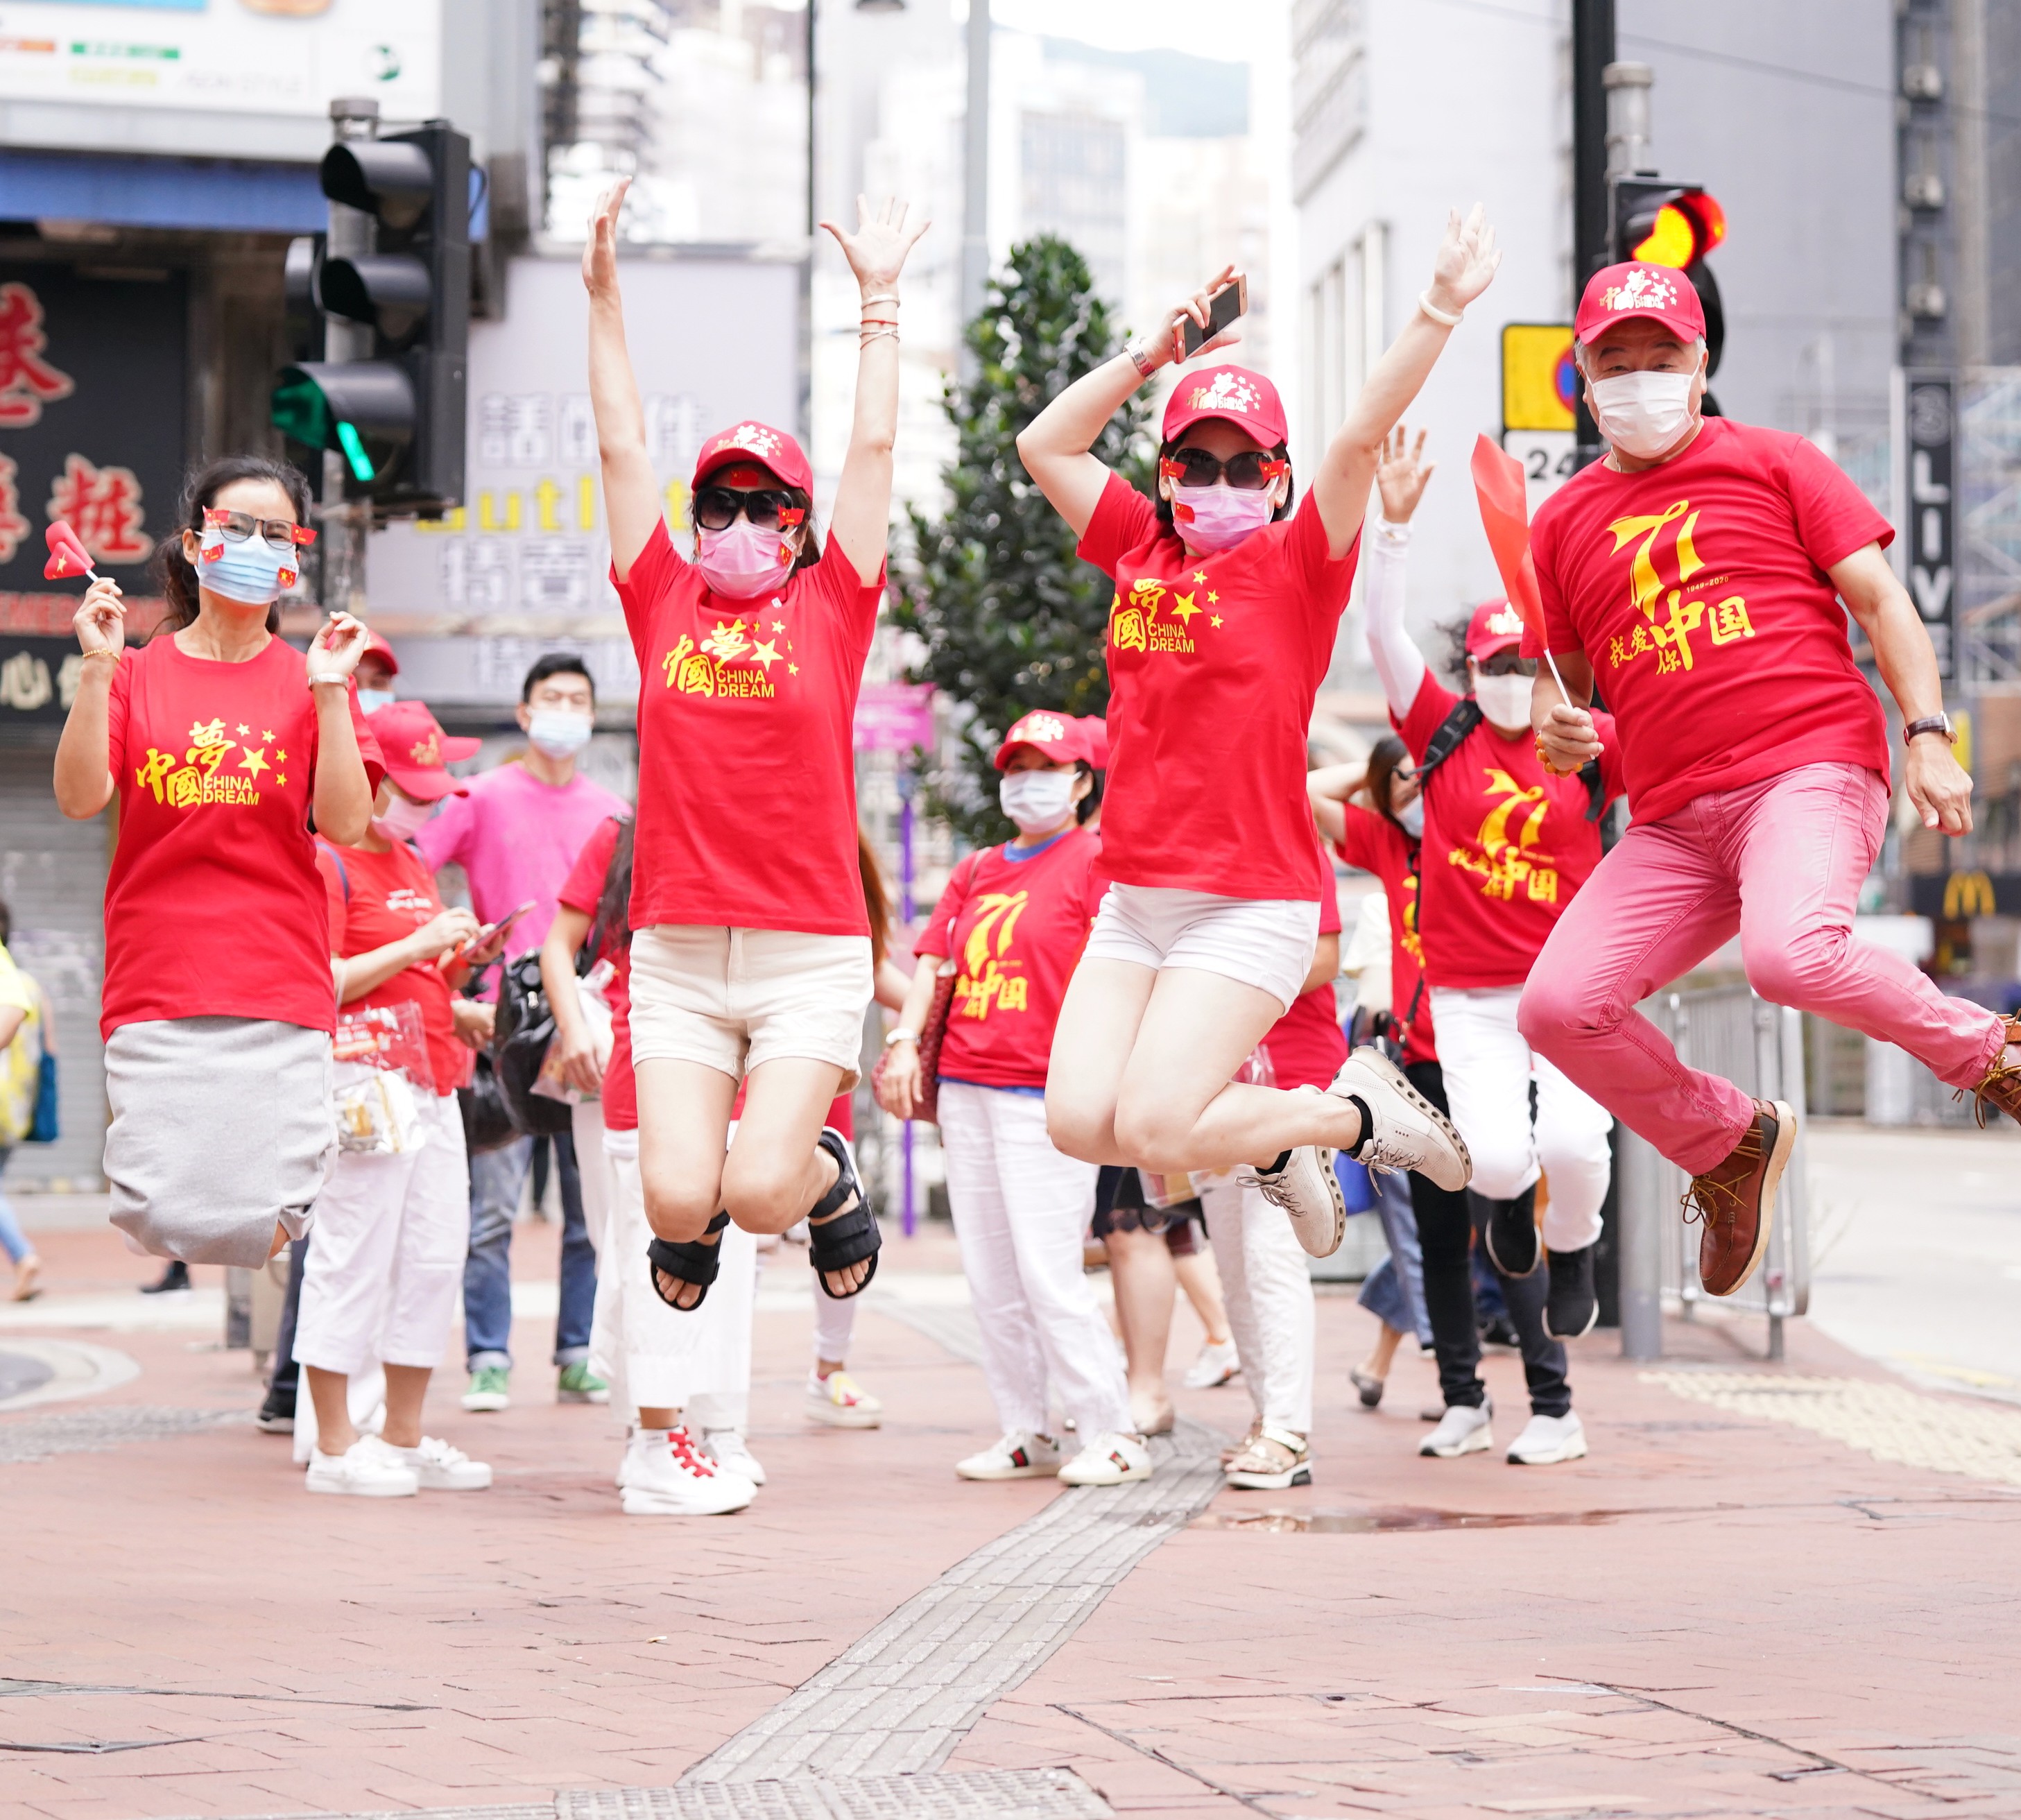 今日（1日）是國慶節。不少香港市民以各種方式，慶祝新中國71歲華誕。在銅鑼灣，一批市民身着慶祝國慶的紅色文化衫，手舉國旗合影；還有市民租用紅色的敞篷大巴，手舉國旗沿路巡遊。